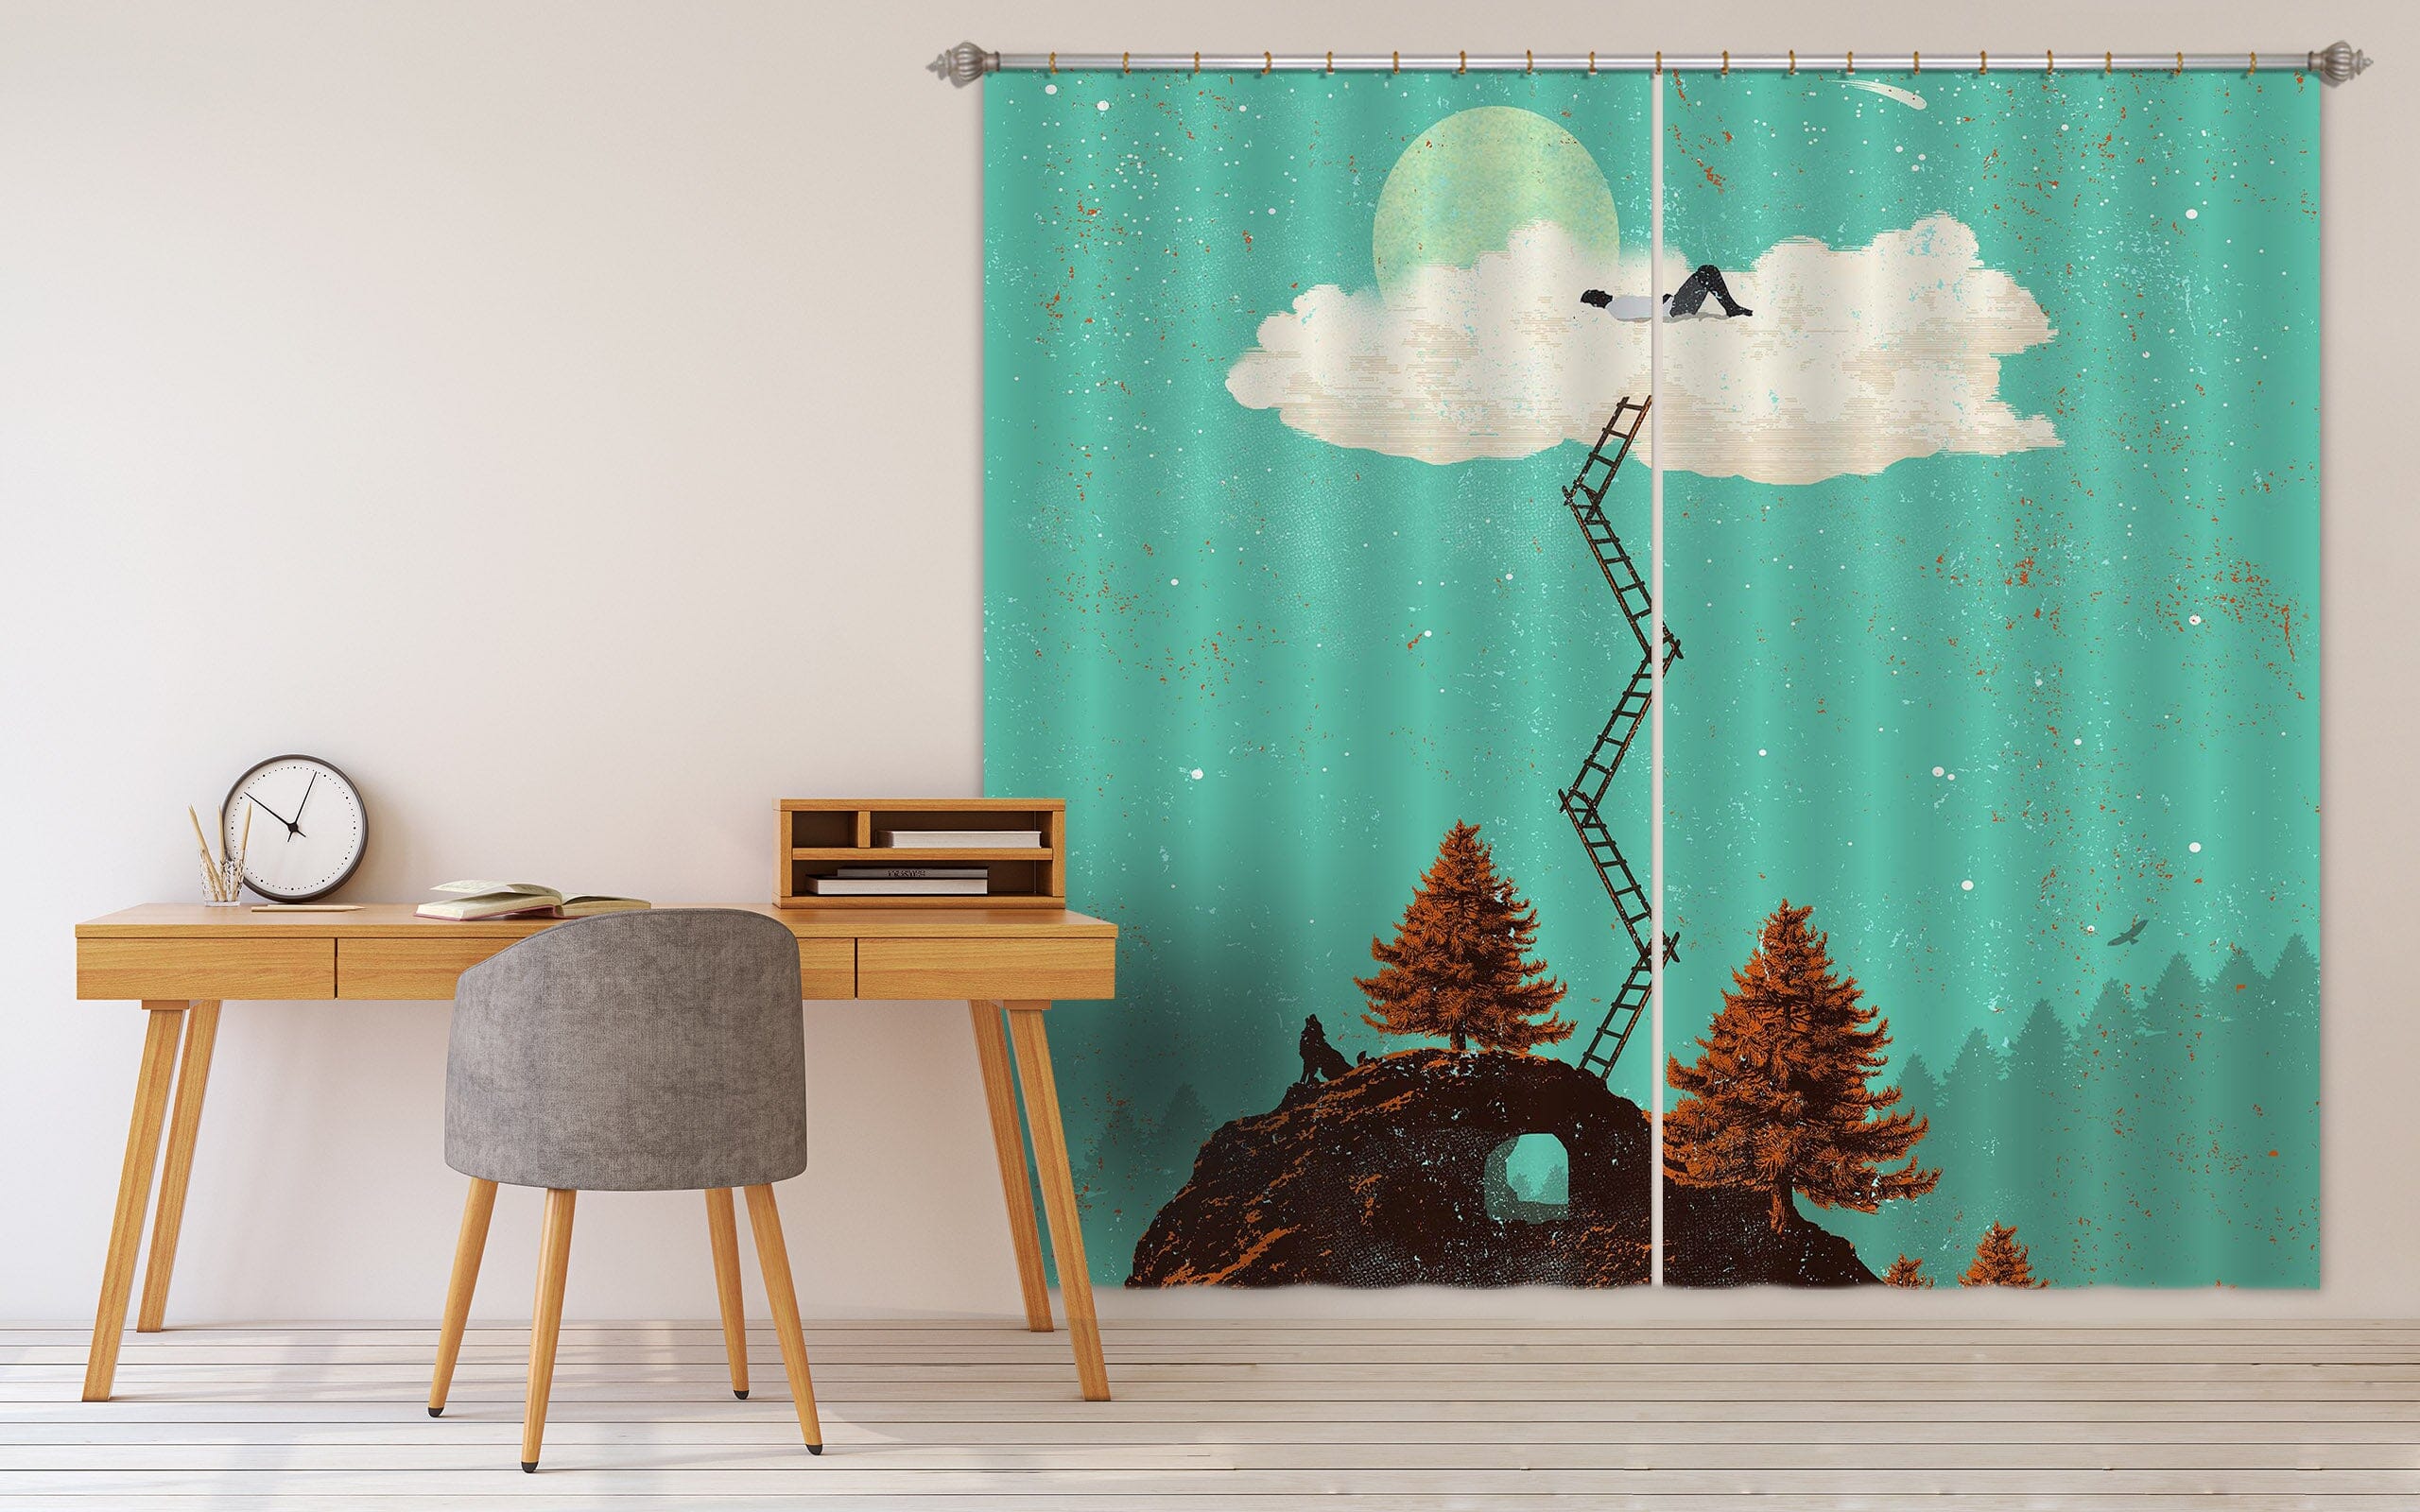 3D Sleeping In The Cloud 041 Showdeer Curtain Curtains Drapes Curtains AJ Creativity Home 